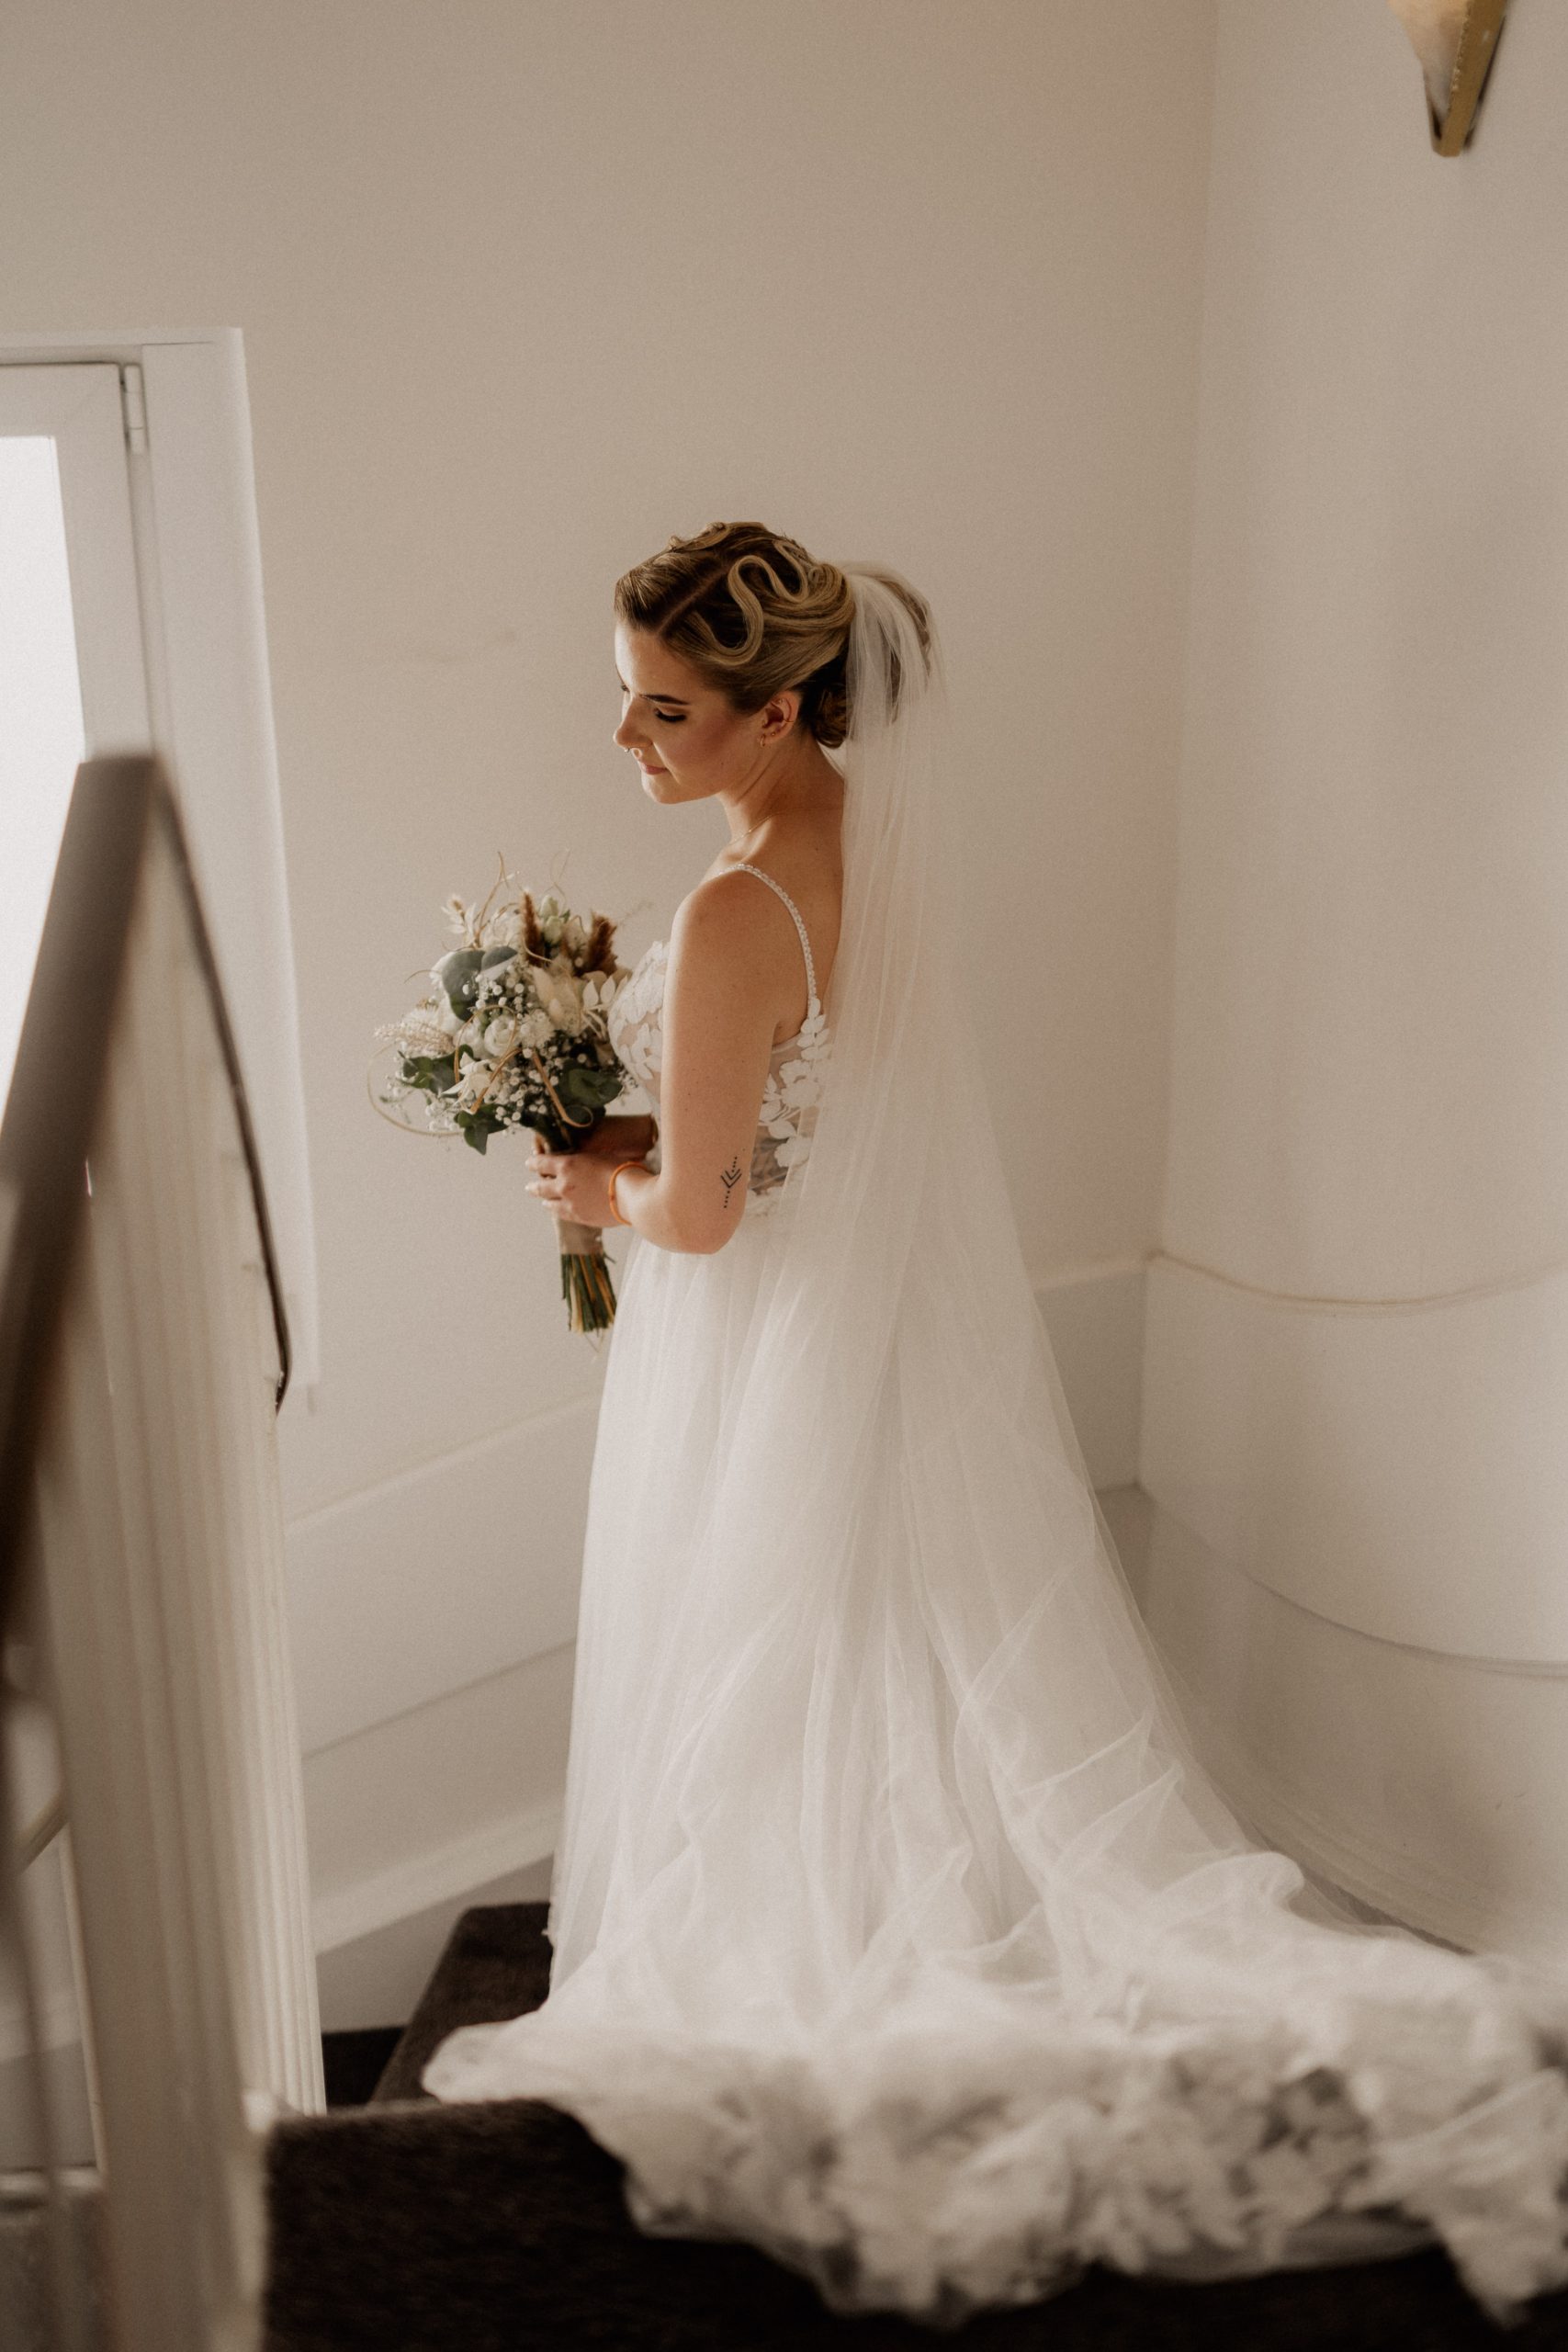 Portaritaufnahmen der Braut auf der Treppe